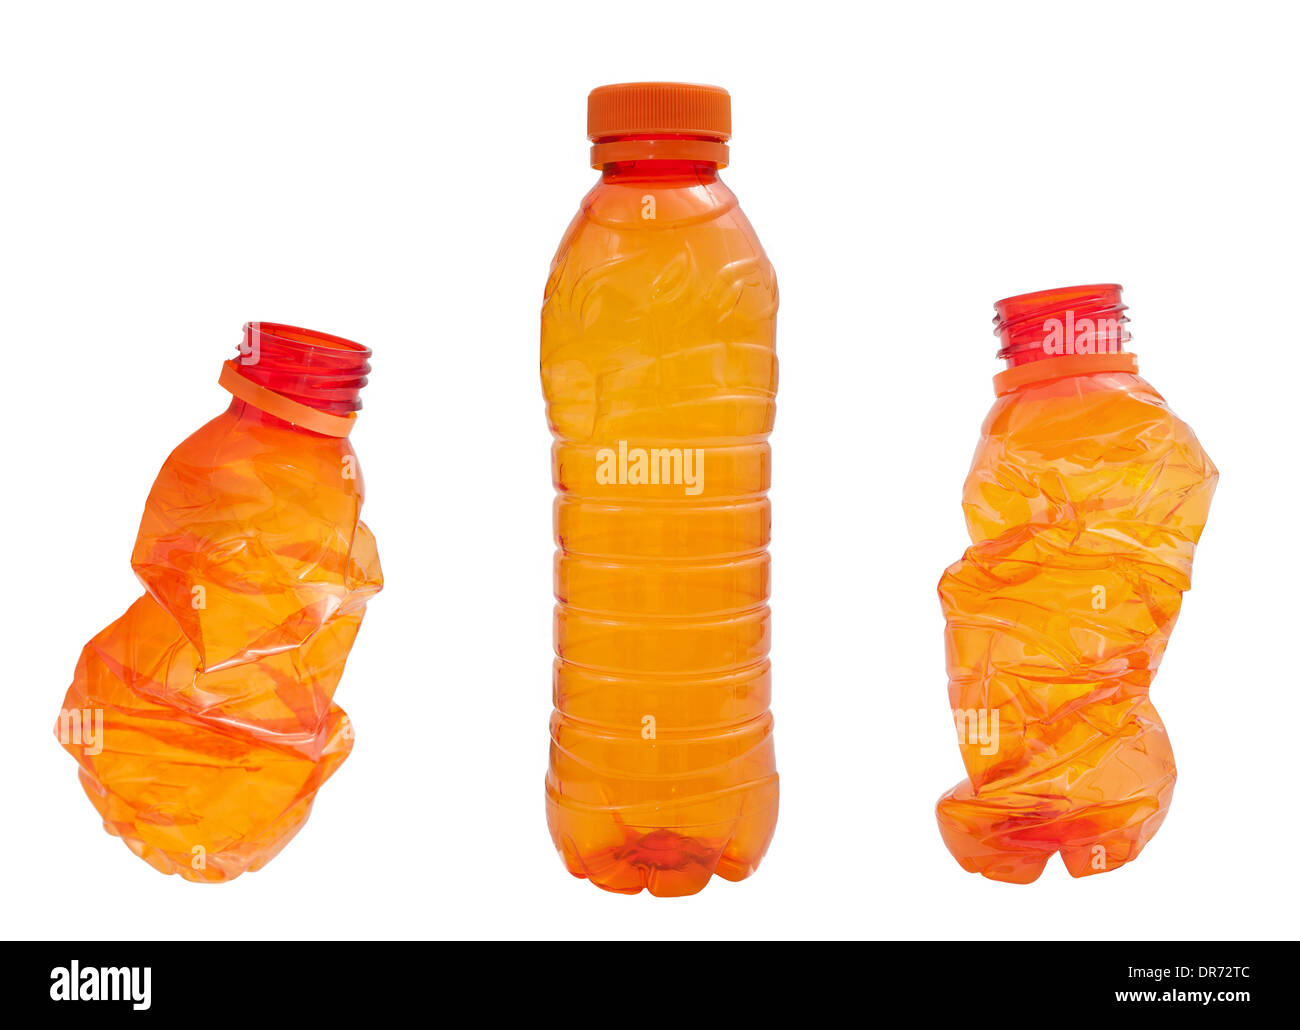 Orange Plastic bottles isolated on white background Stock Photo